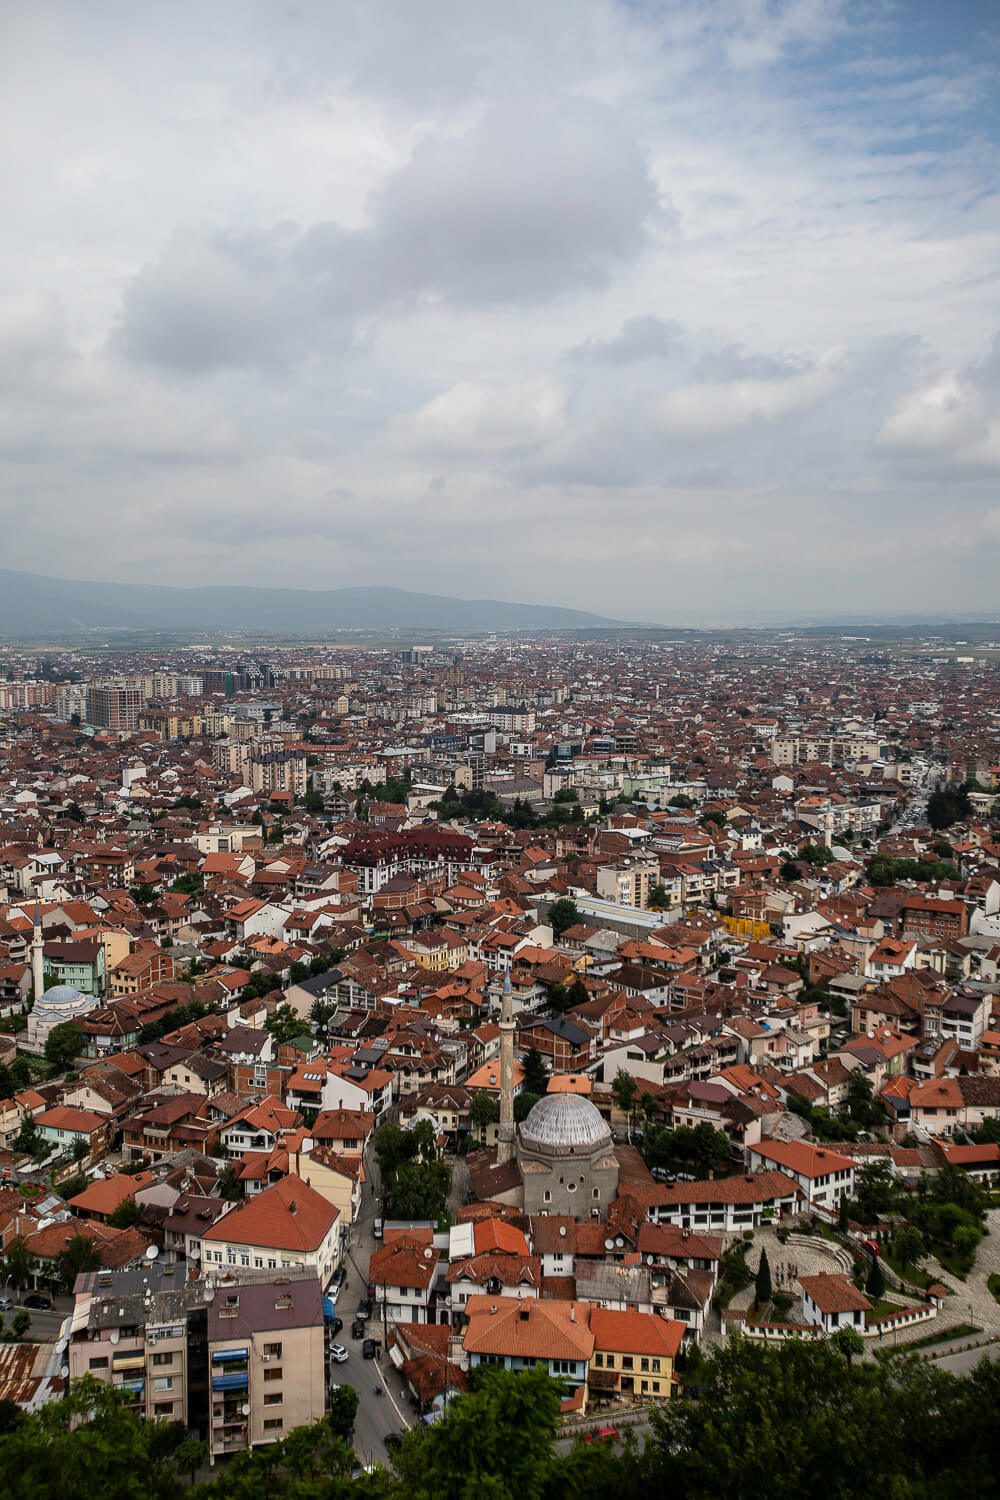 Views over Prizren